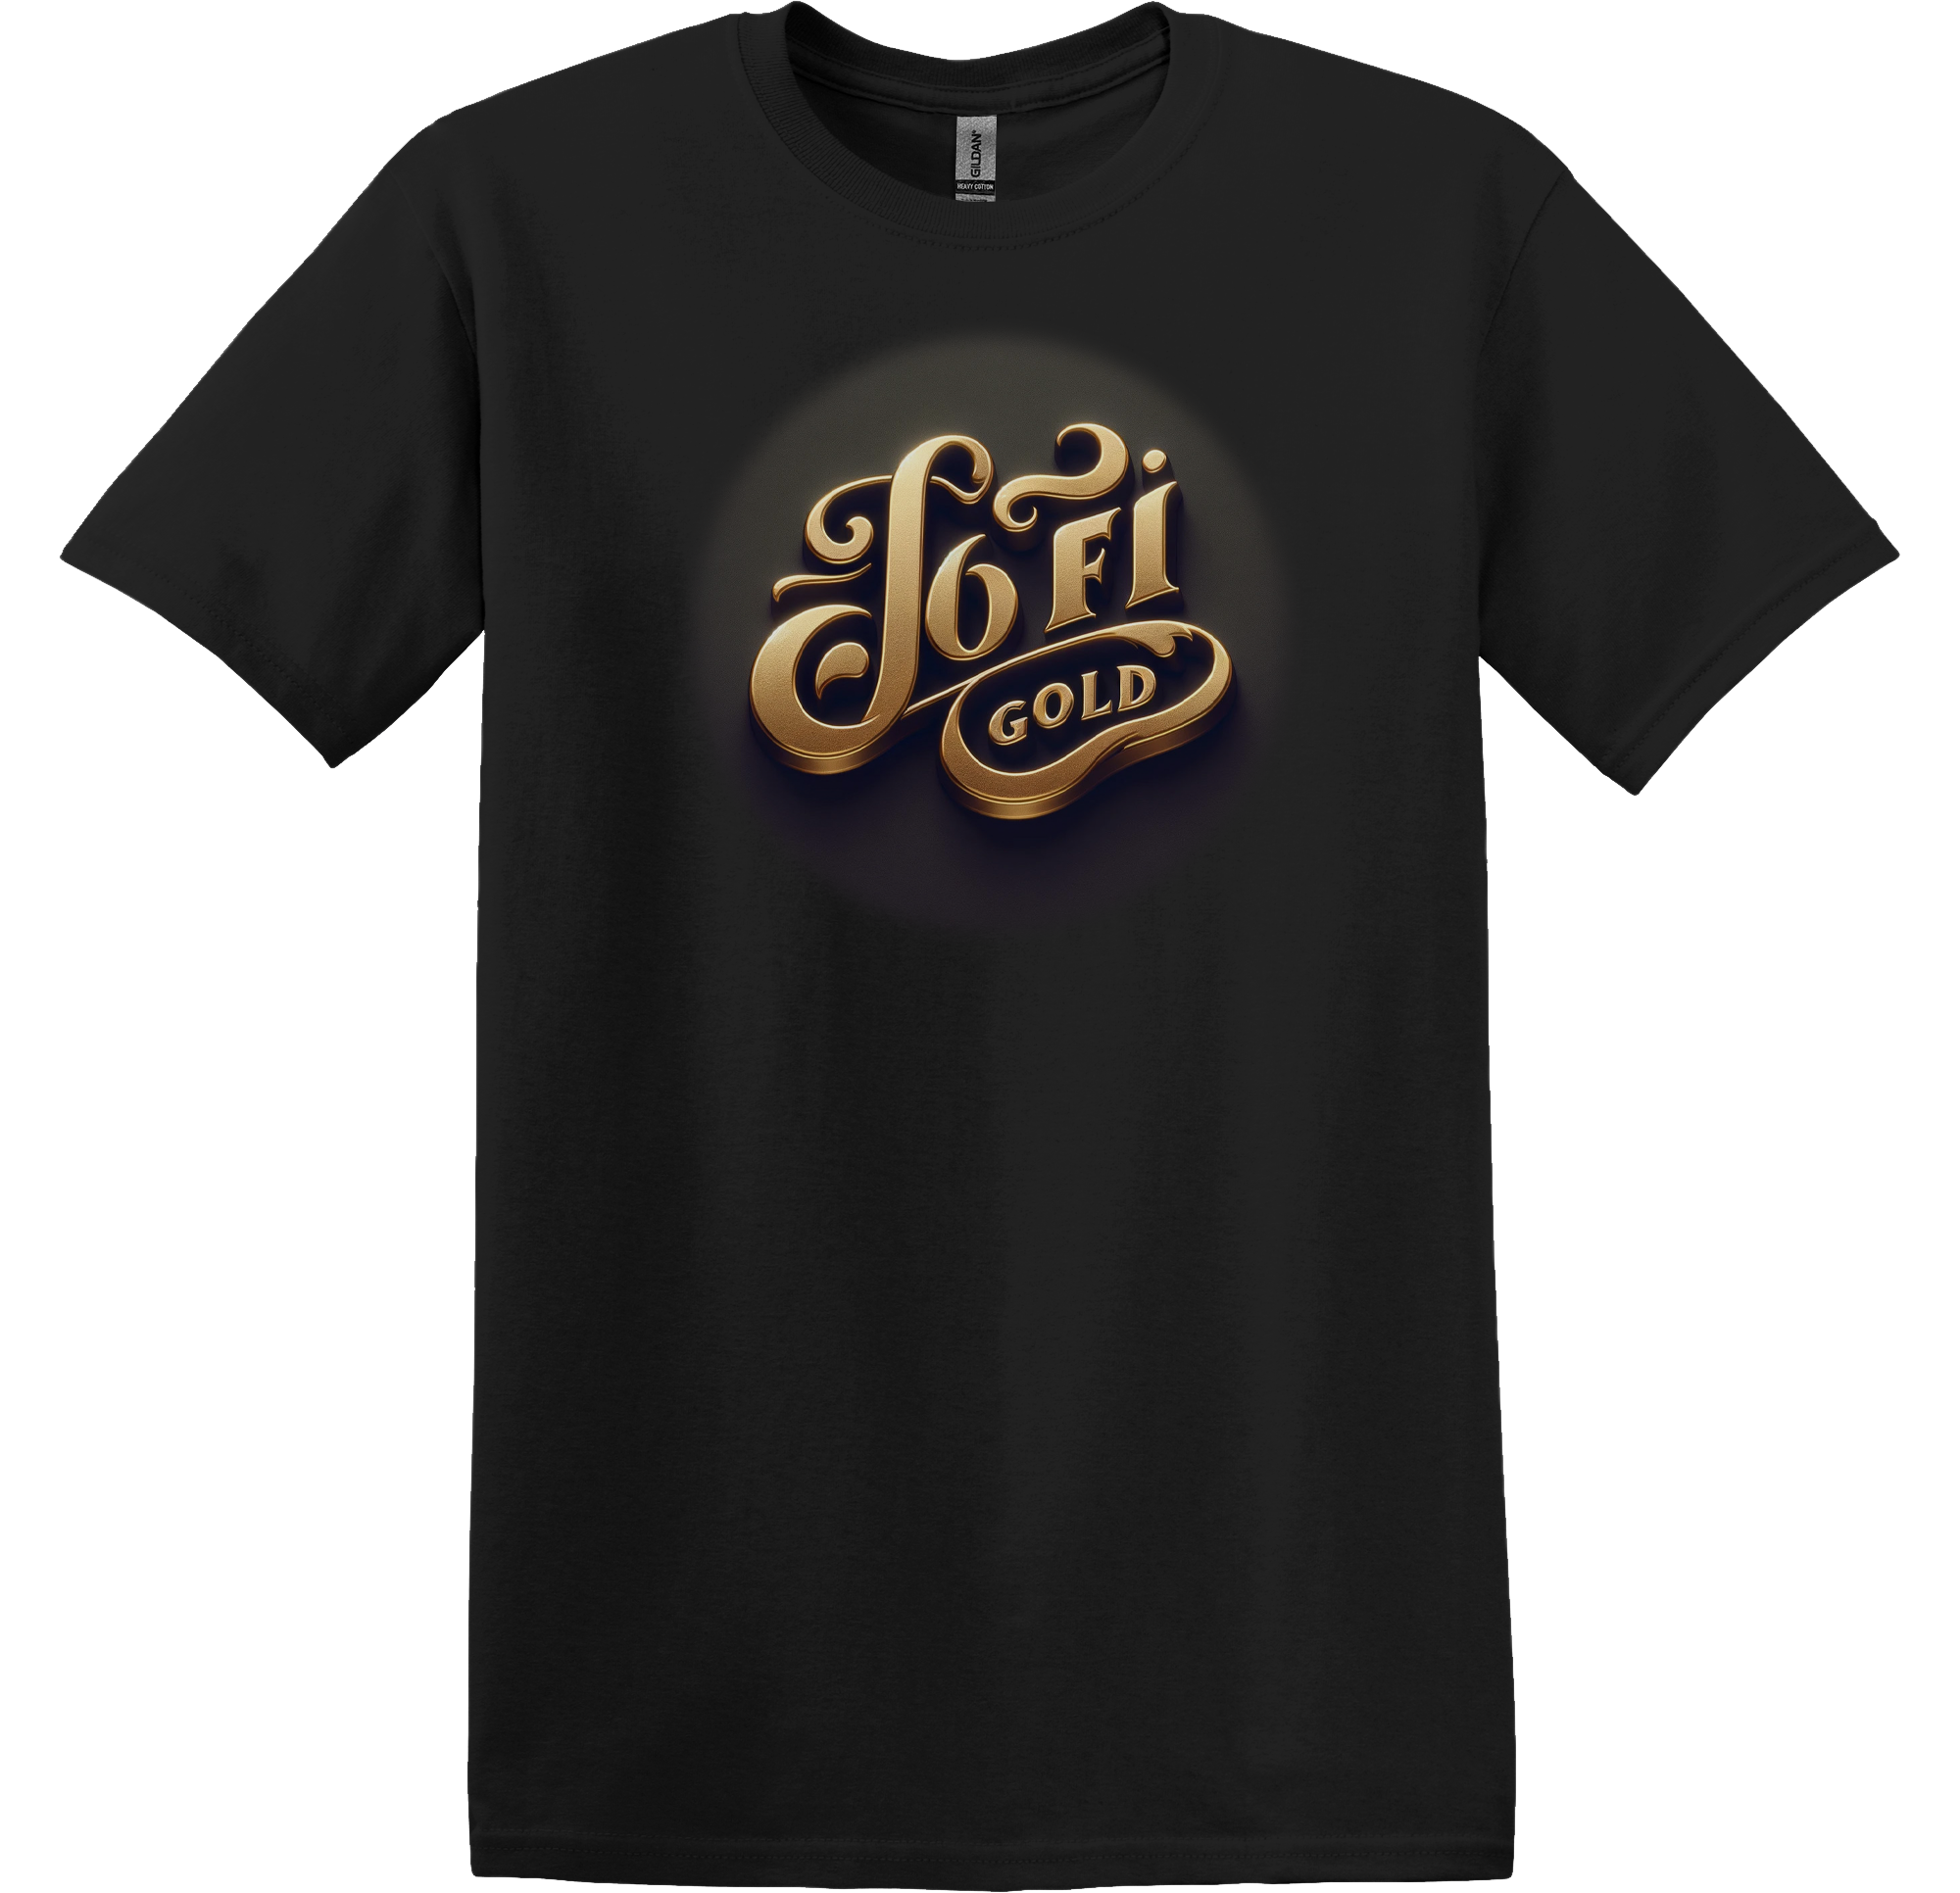 Lofi Gold Official Text Design Short Sleeve Unisex T-Shirt Official Merchandise